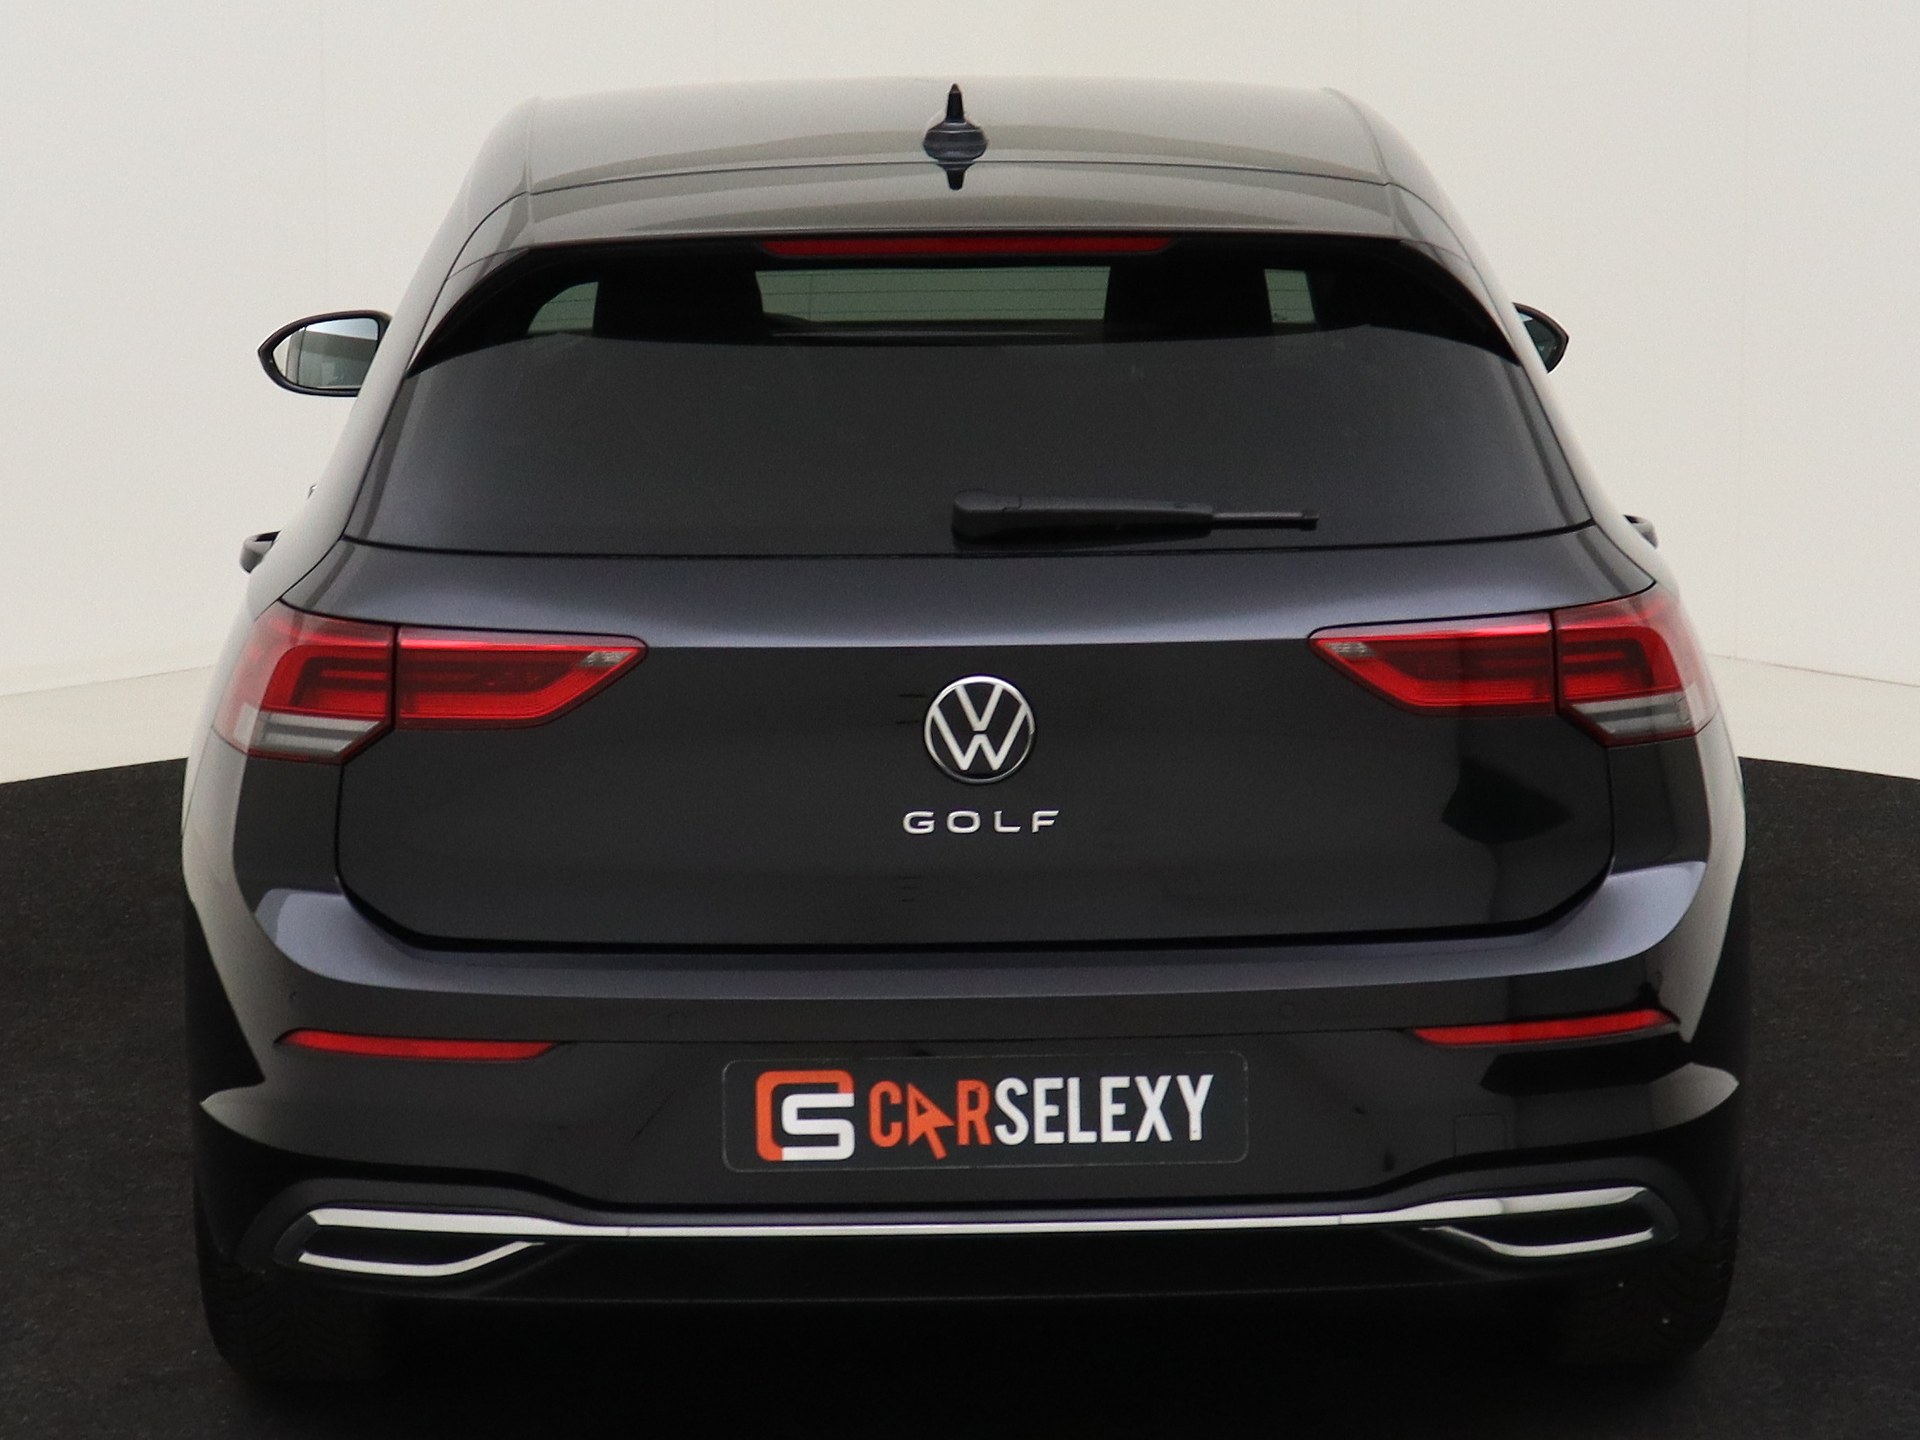 Volkswagen Golf 1.0 TSI 110pk Active¦Navi via app¦Digitaal van CarSelexy dealer DamstéAuto in Nieuwegein